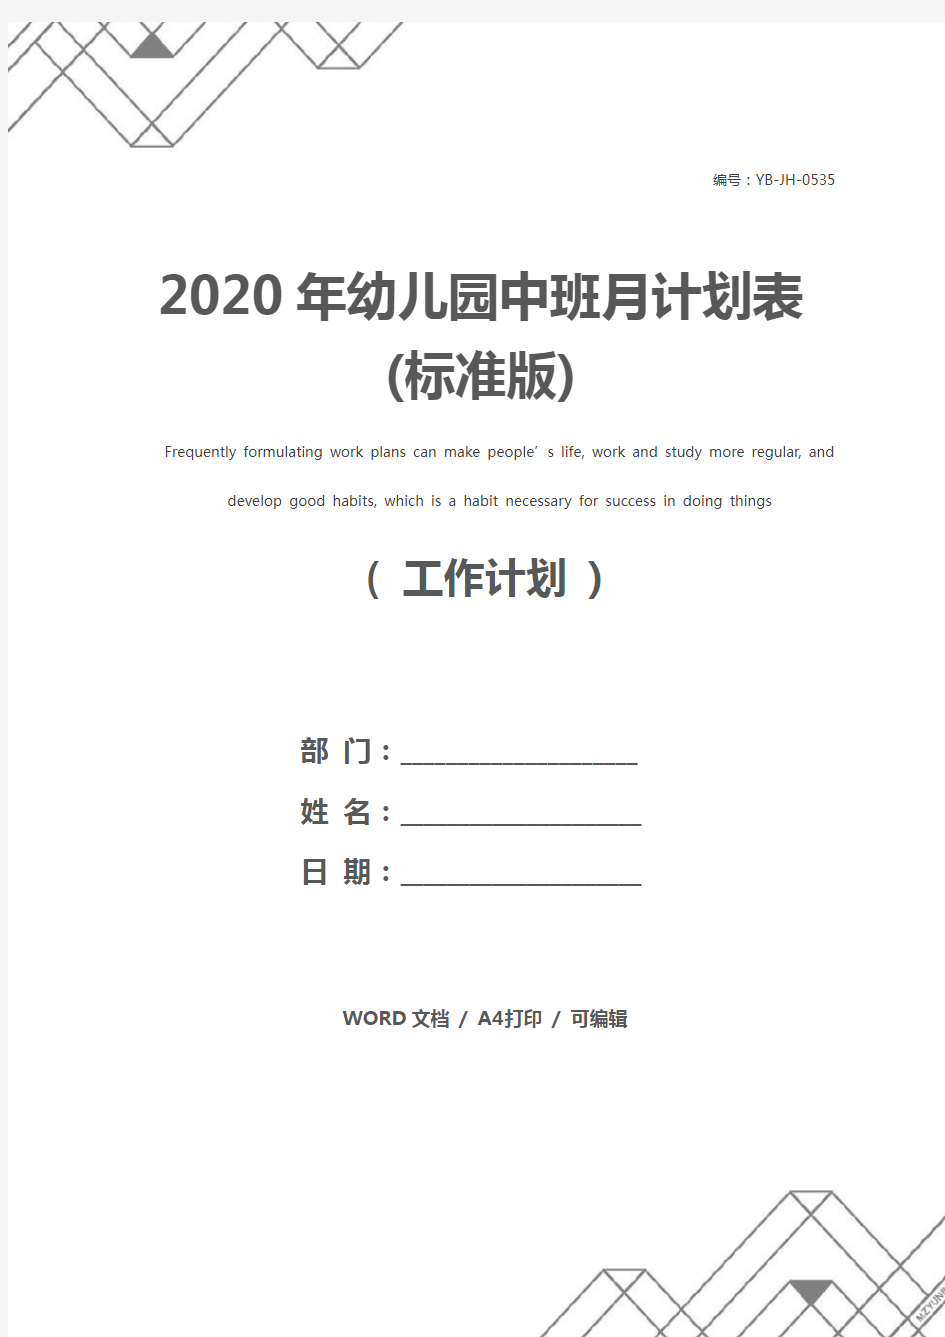 2020年幼儿园中班月计划表(标准版)